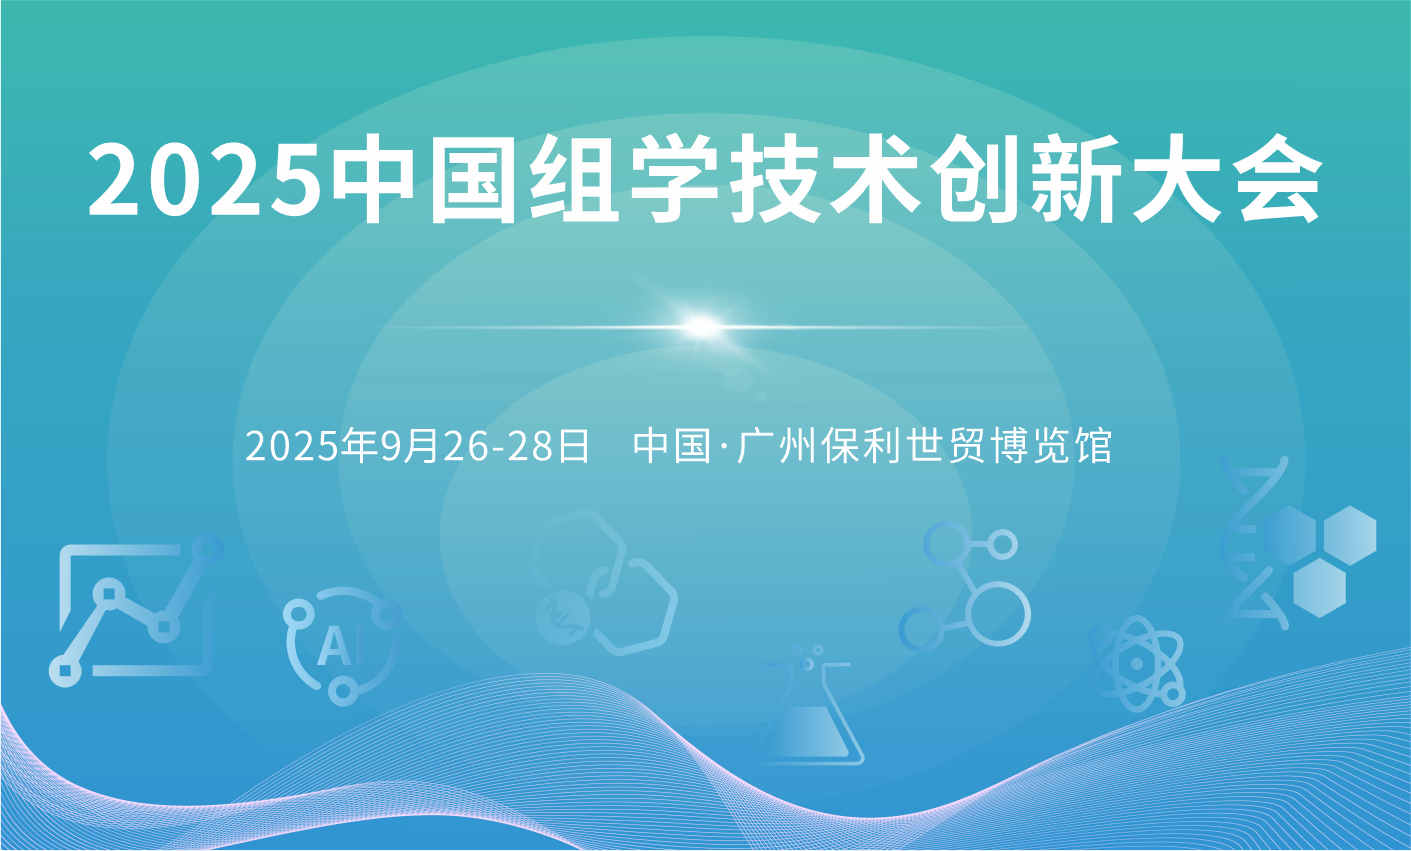 2025中国组学技术创新大会